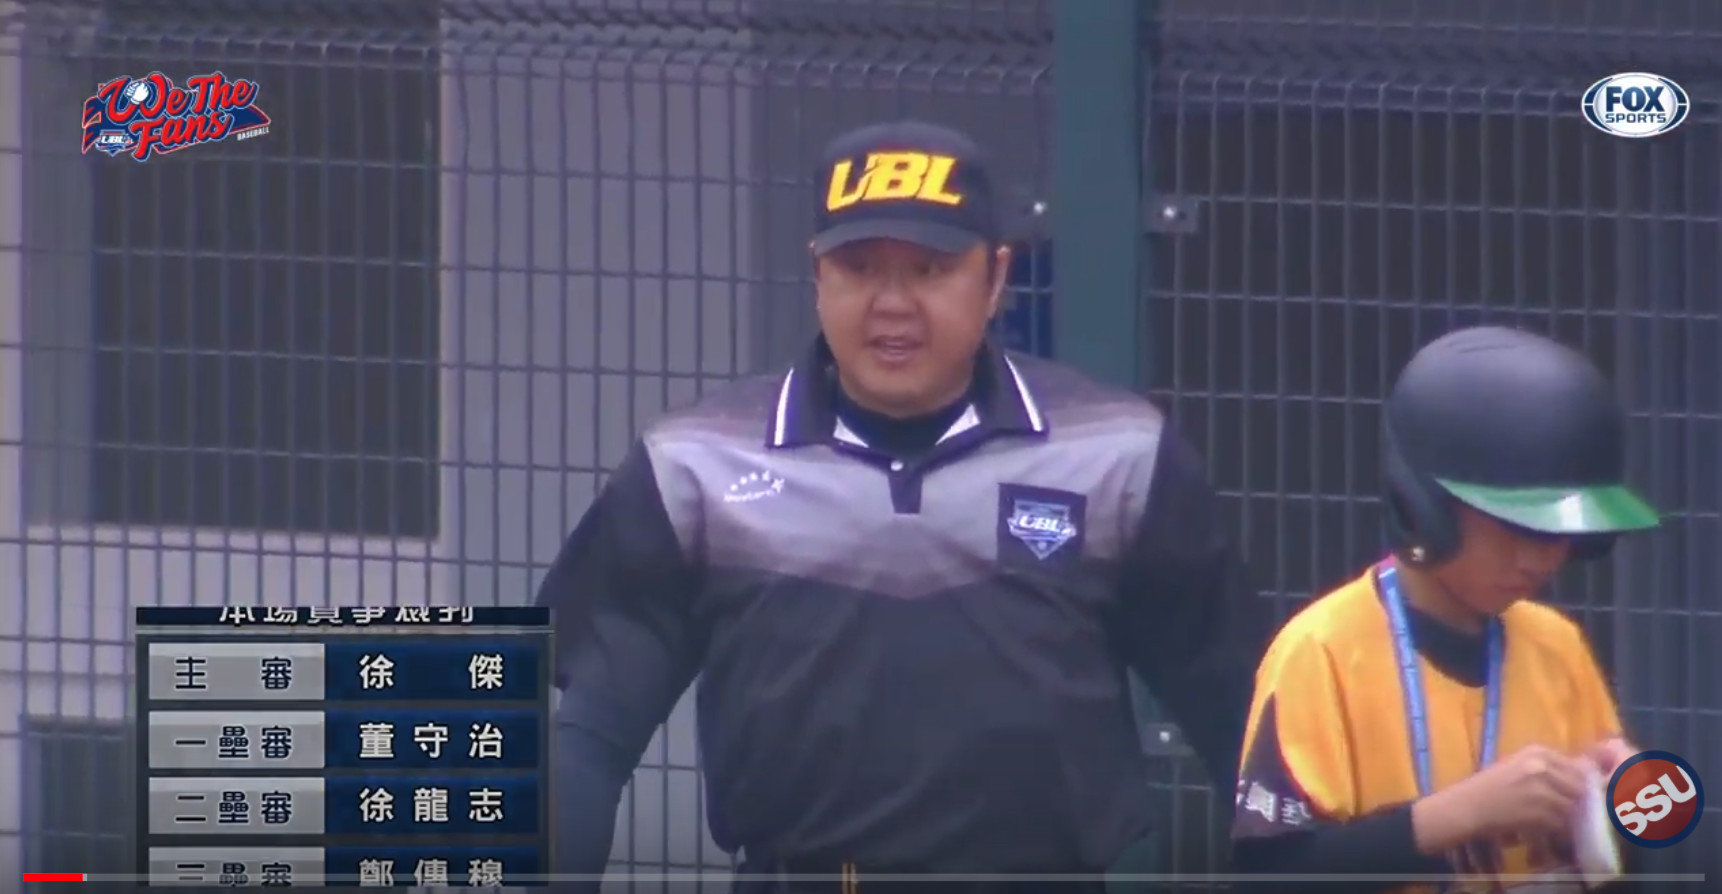 UBL大專棒球聯賽特製裁判服裝